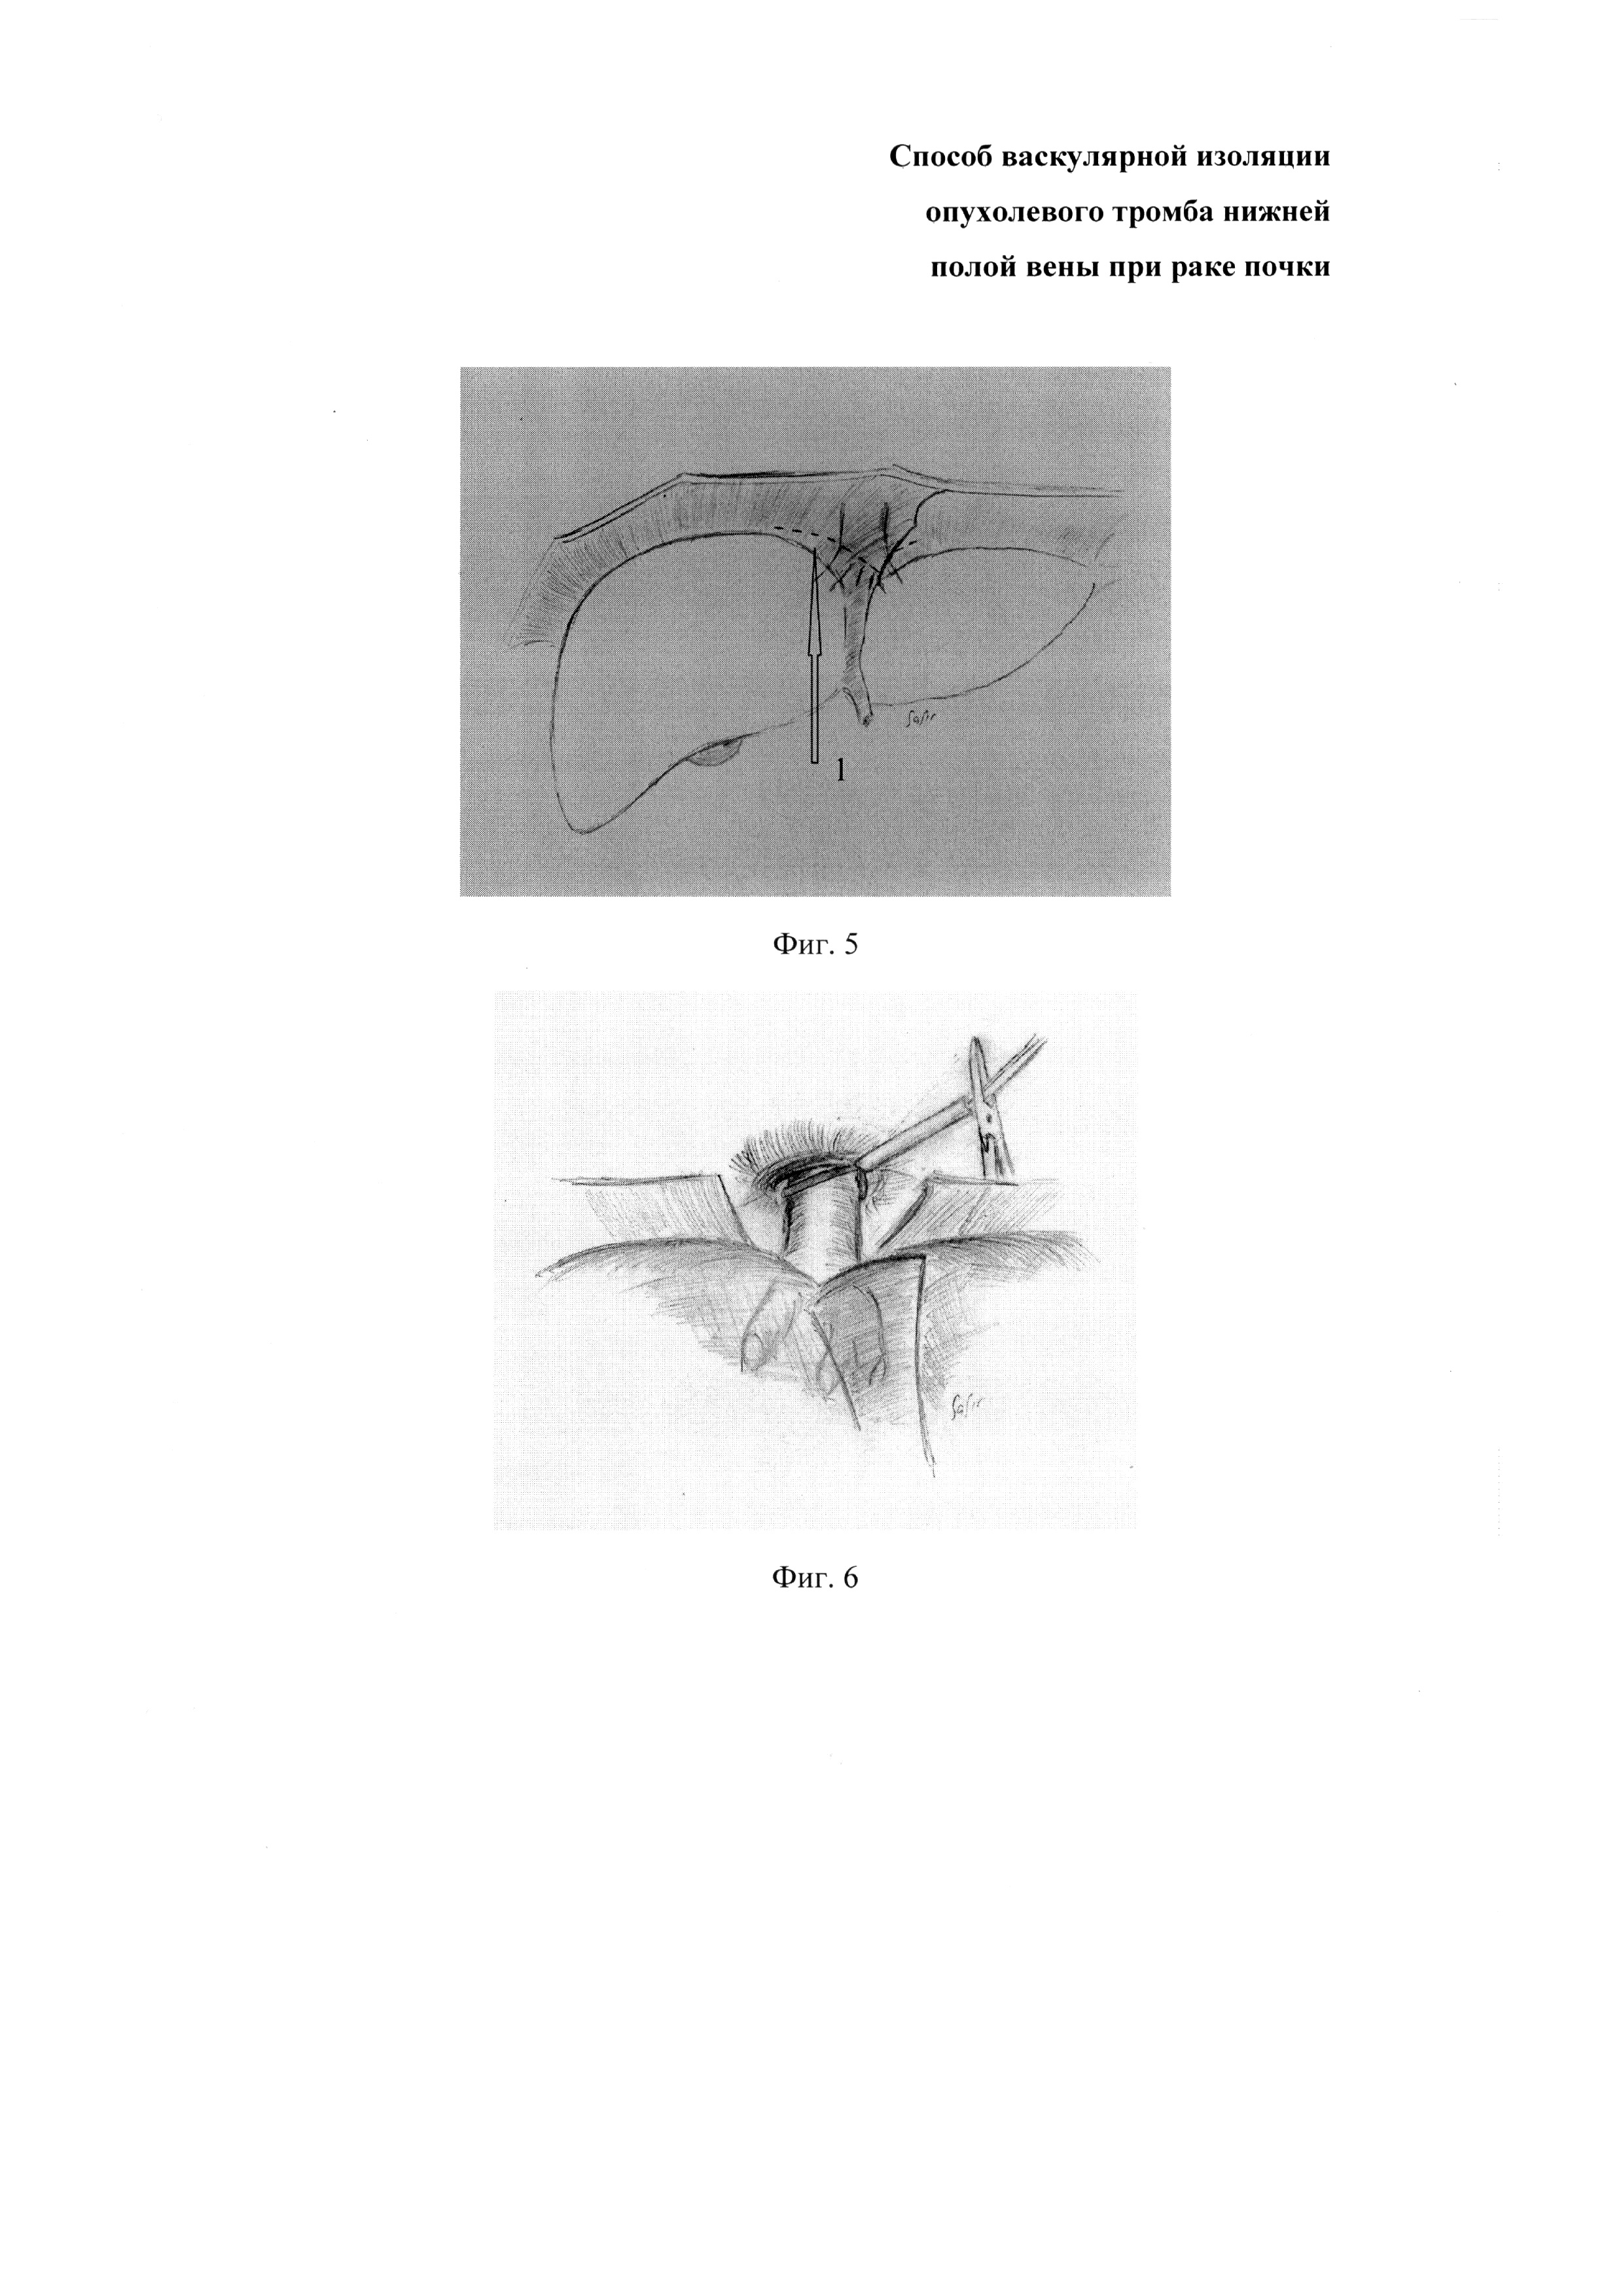 Способ васкулярной изоляции опухолевого тромба нижней полой вены при раке почки